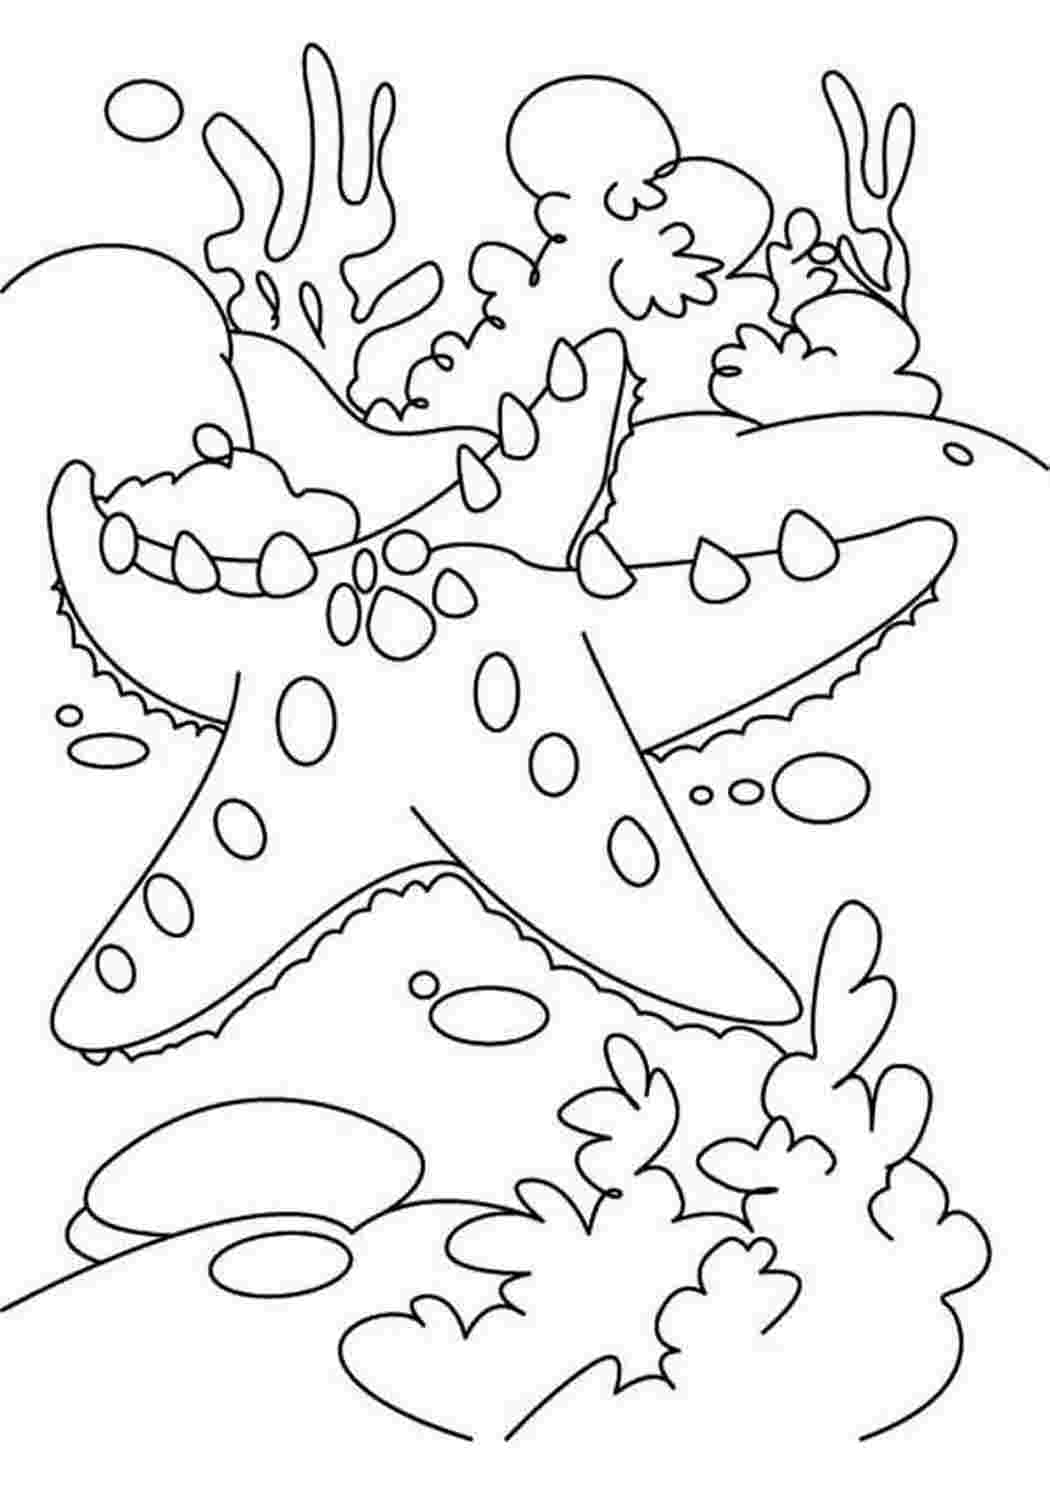 Раскраска Морская звезда для печати — Раскраски для печати бесплатно